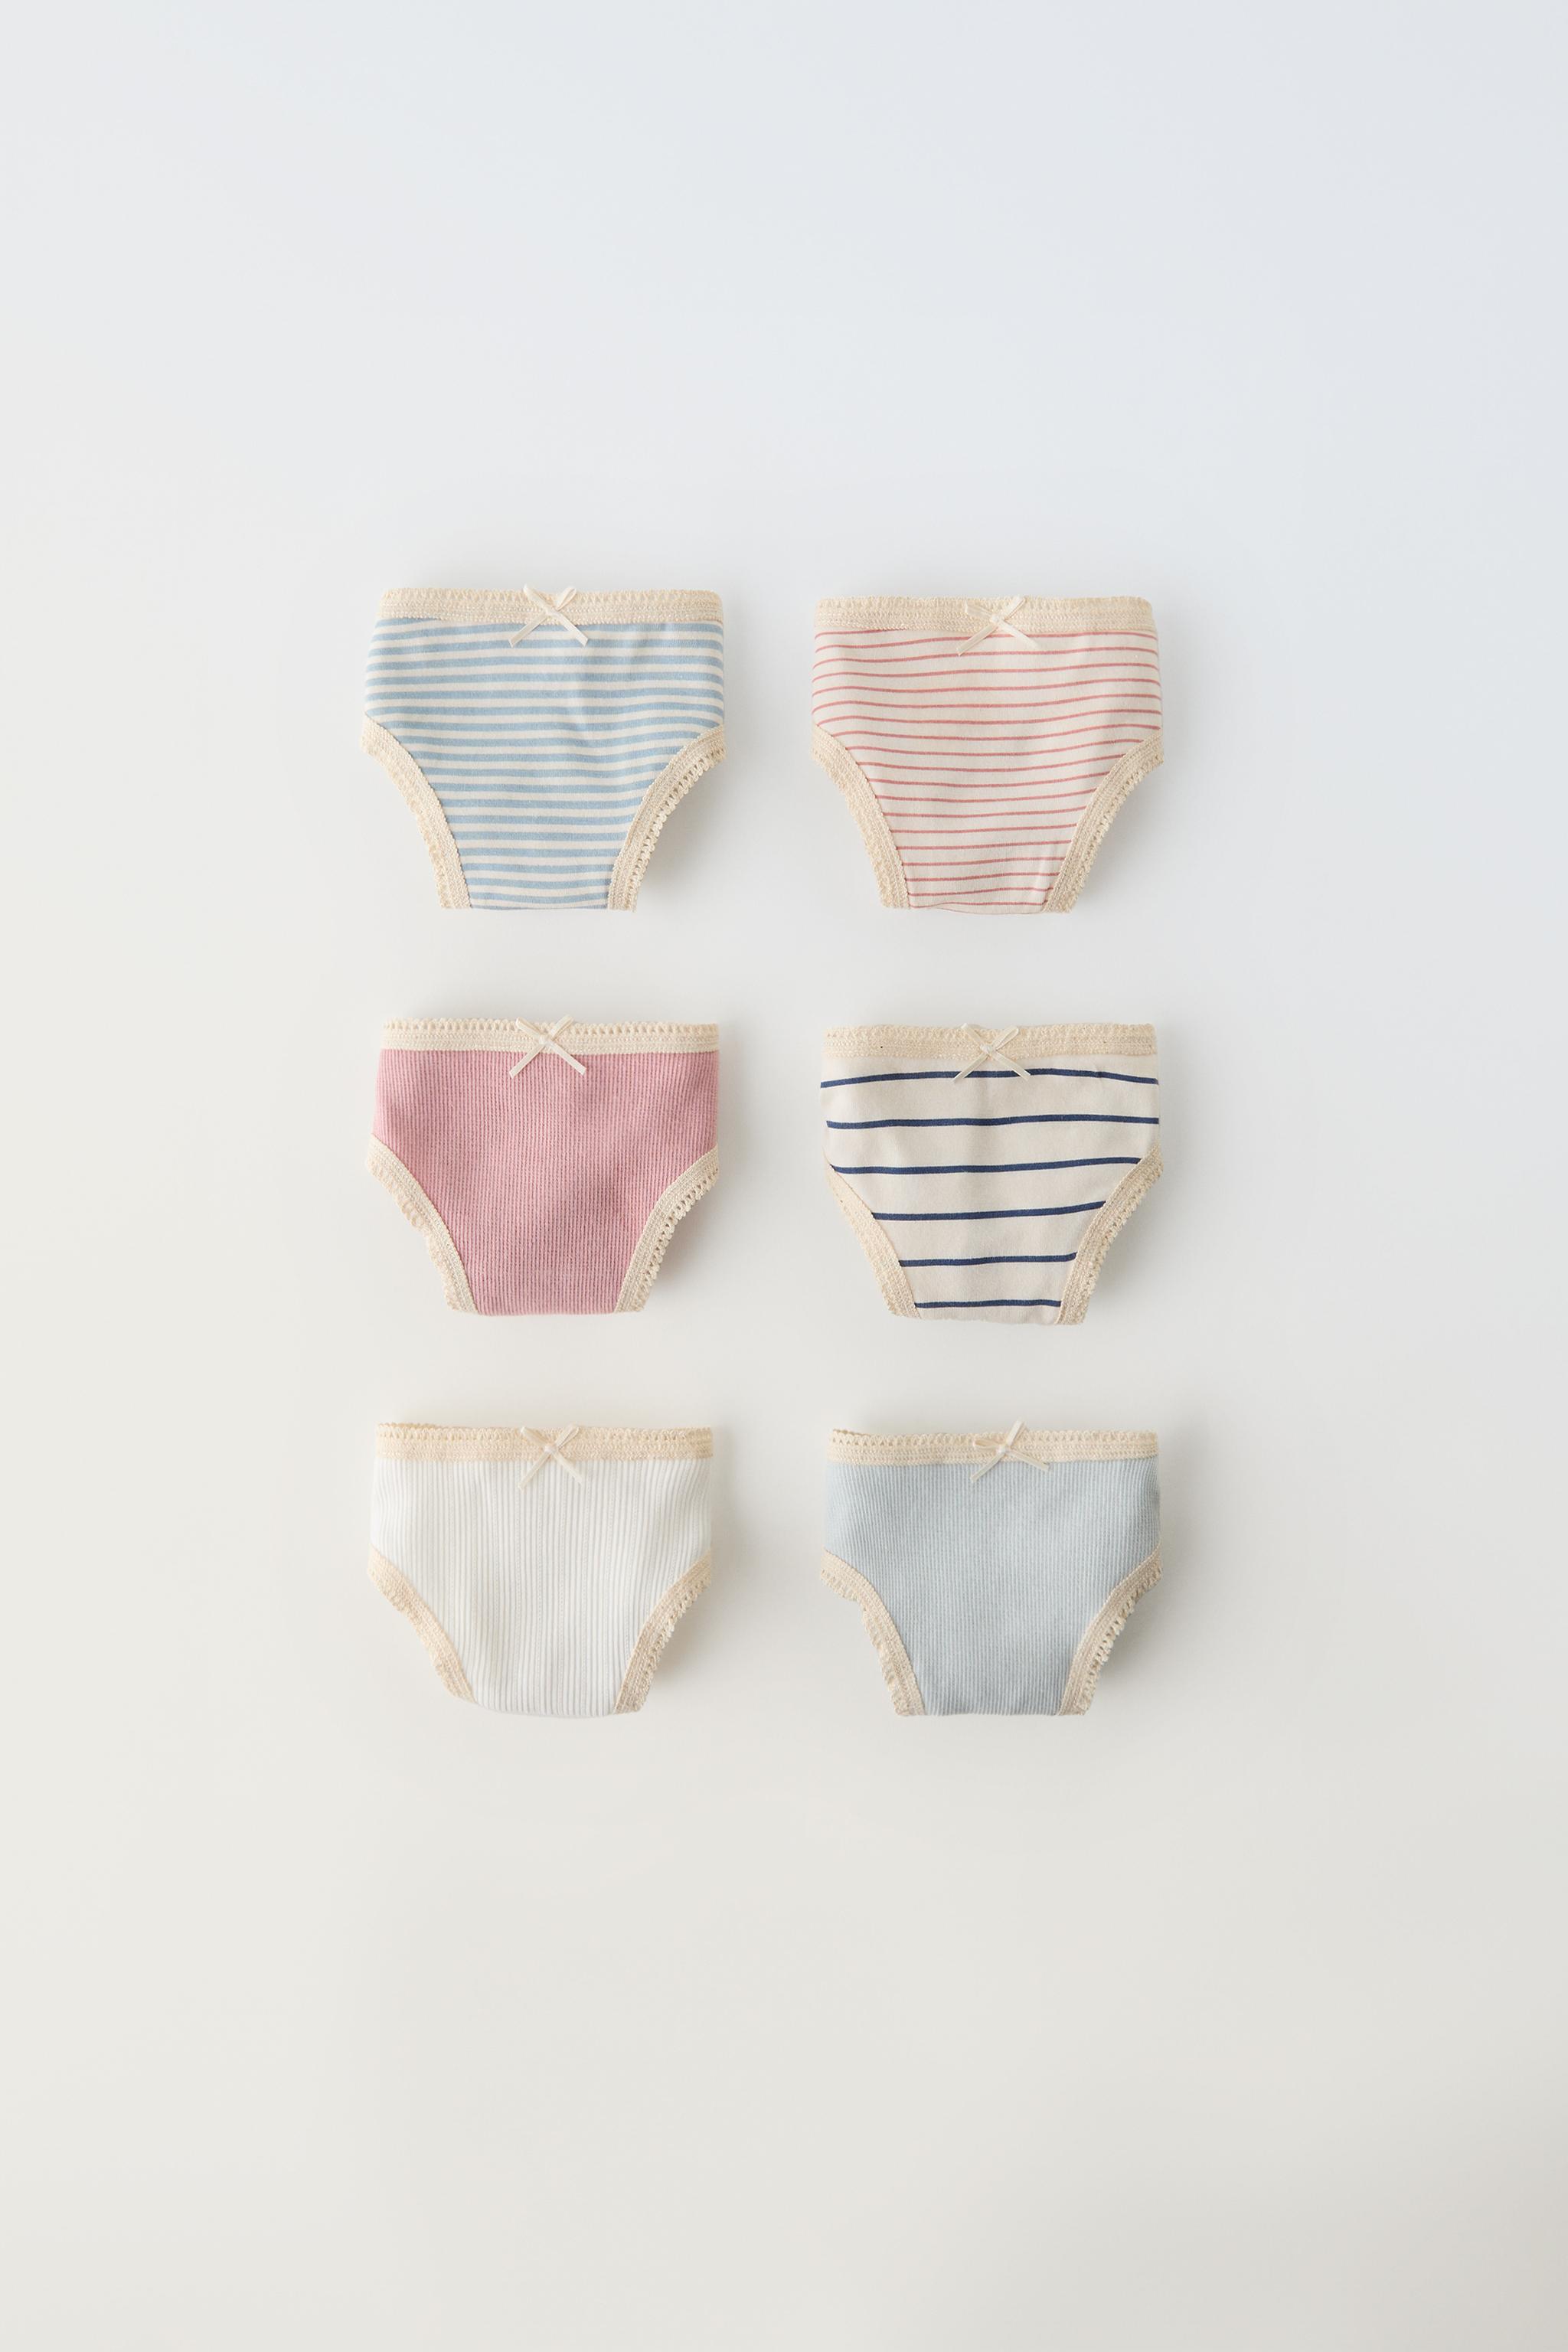 Baby Girl Panties: Buy Floral Baby Girls Underwear Online